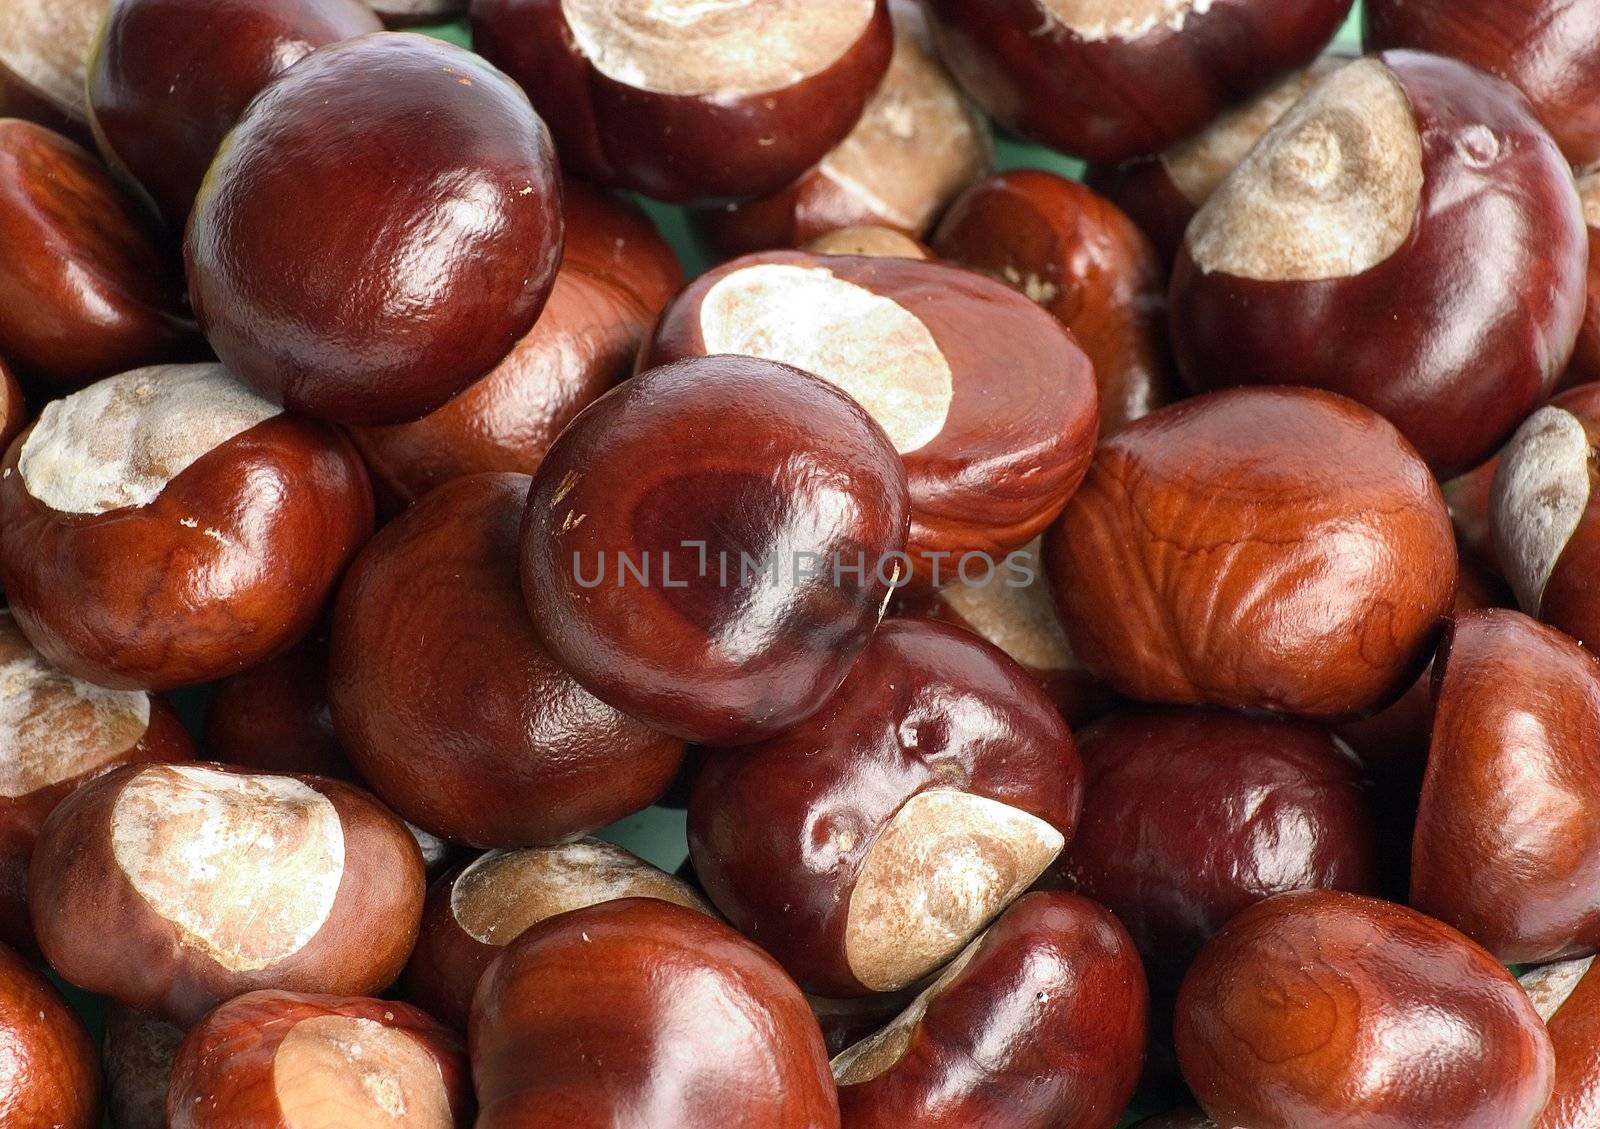 chestnuts by miradrozdowski